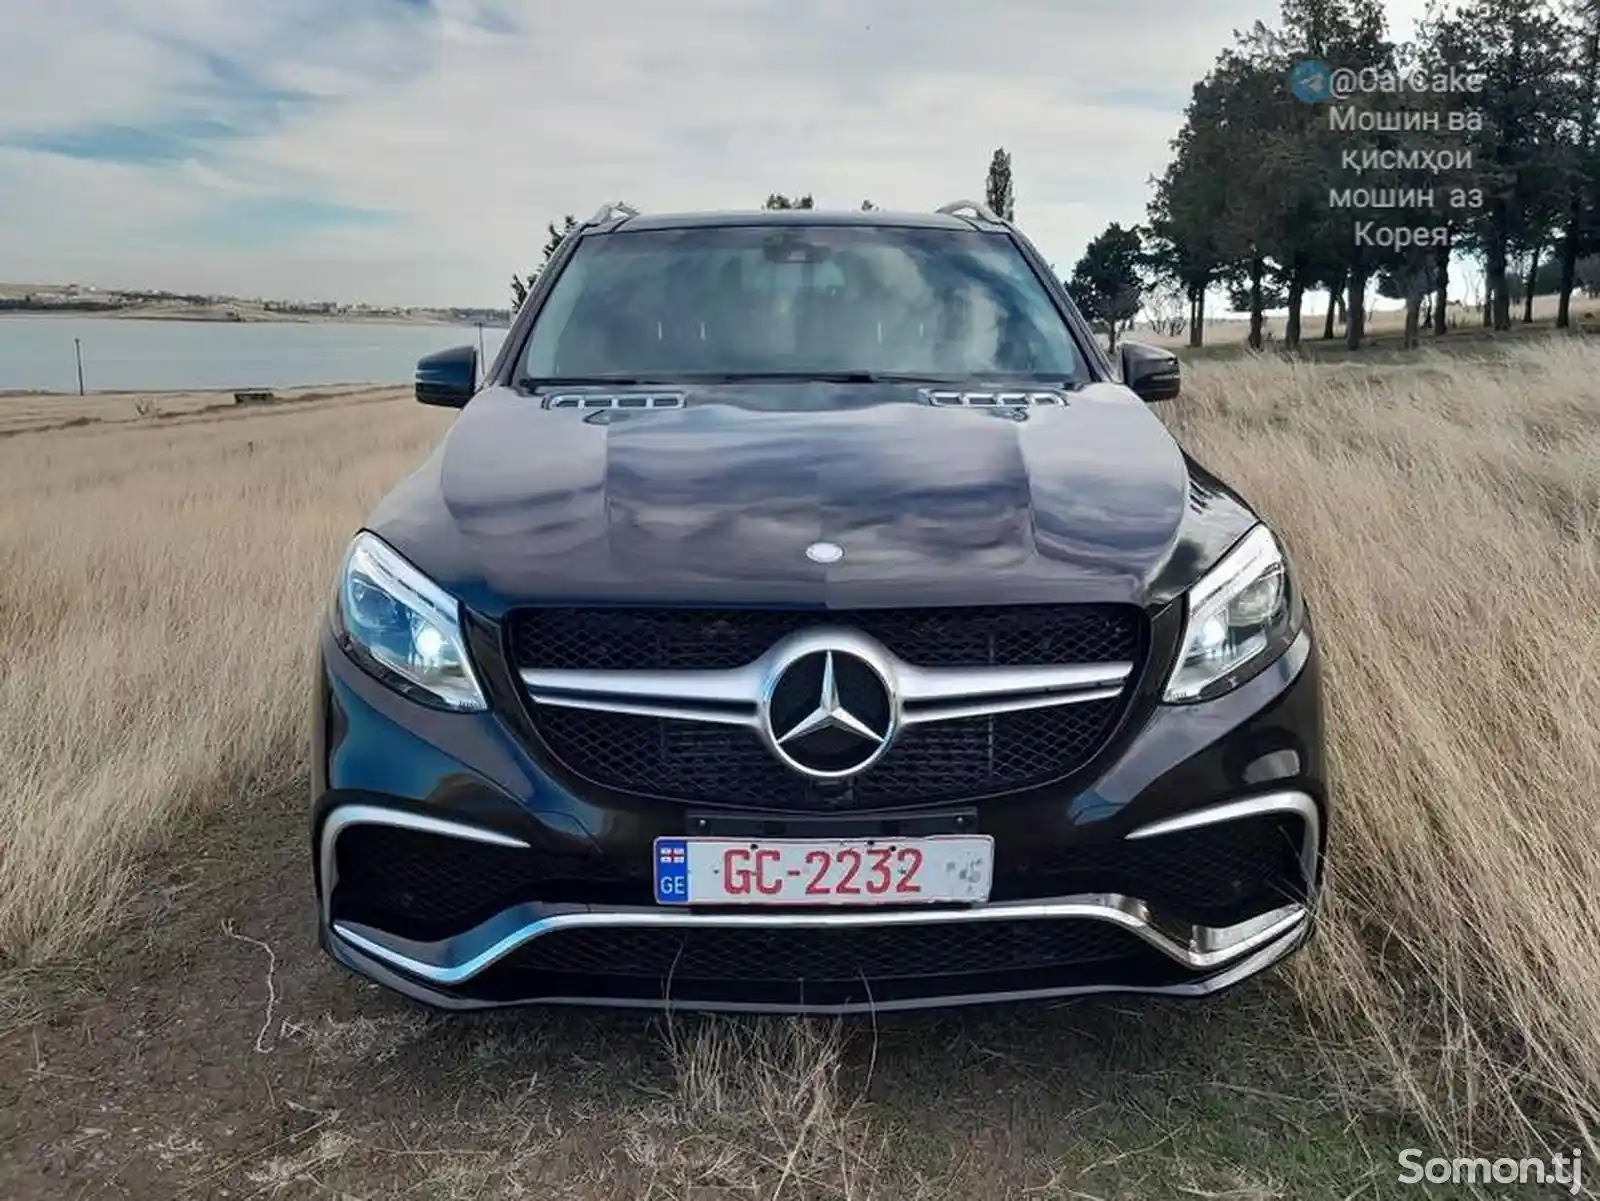 Mercedes-Benz GLE class, 2016-11